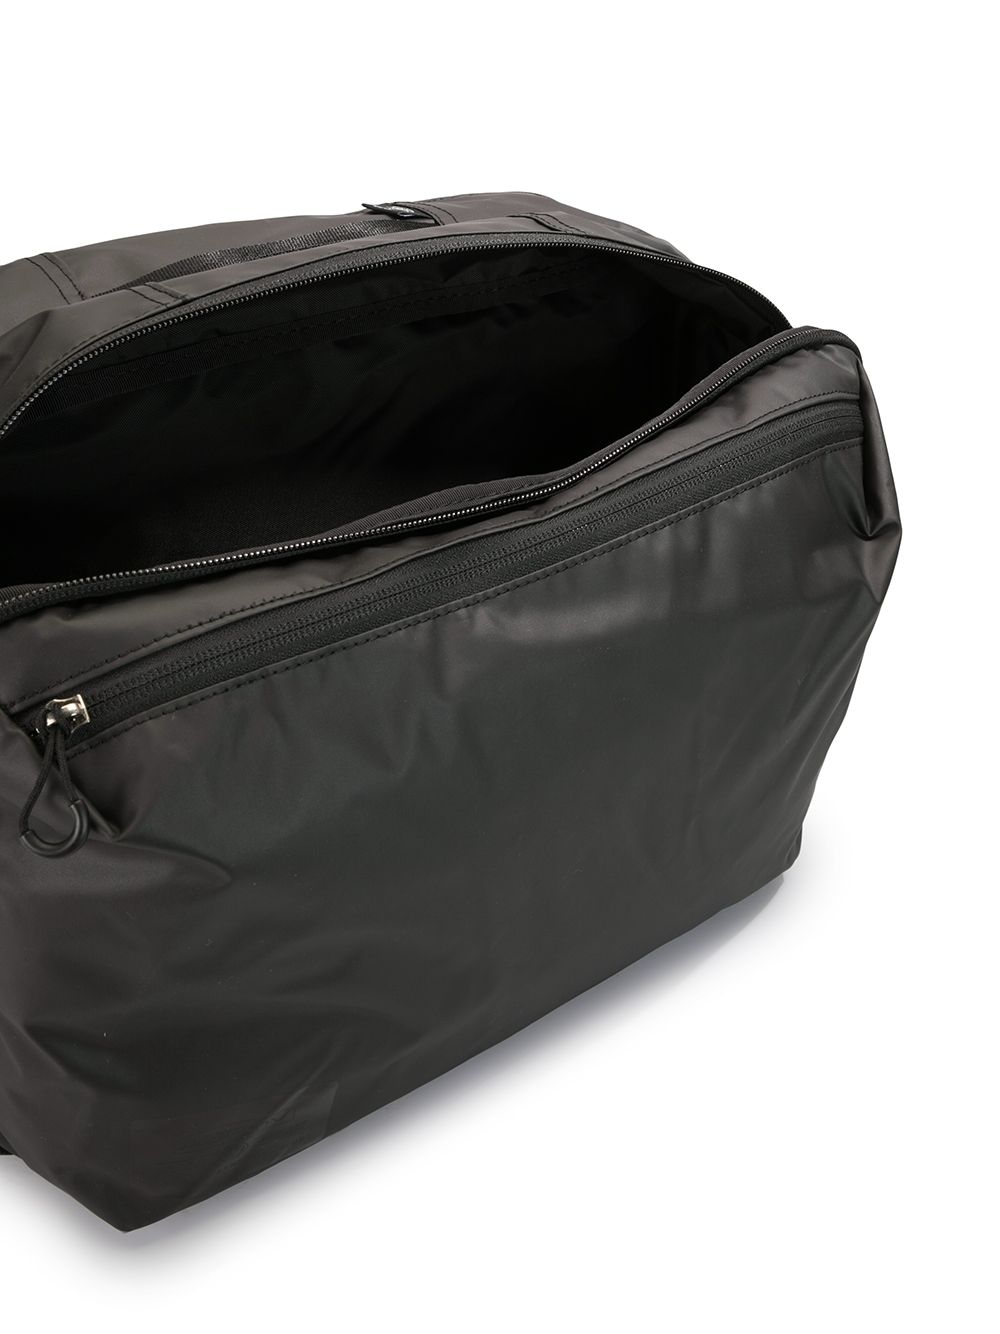 As2ov Travel Series Shoulder Bag - Farfetch